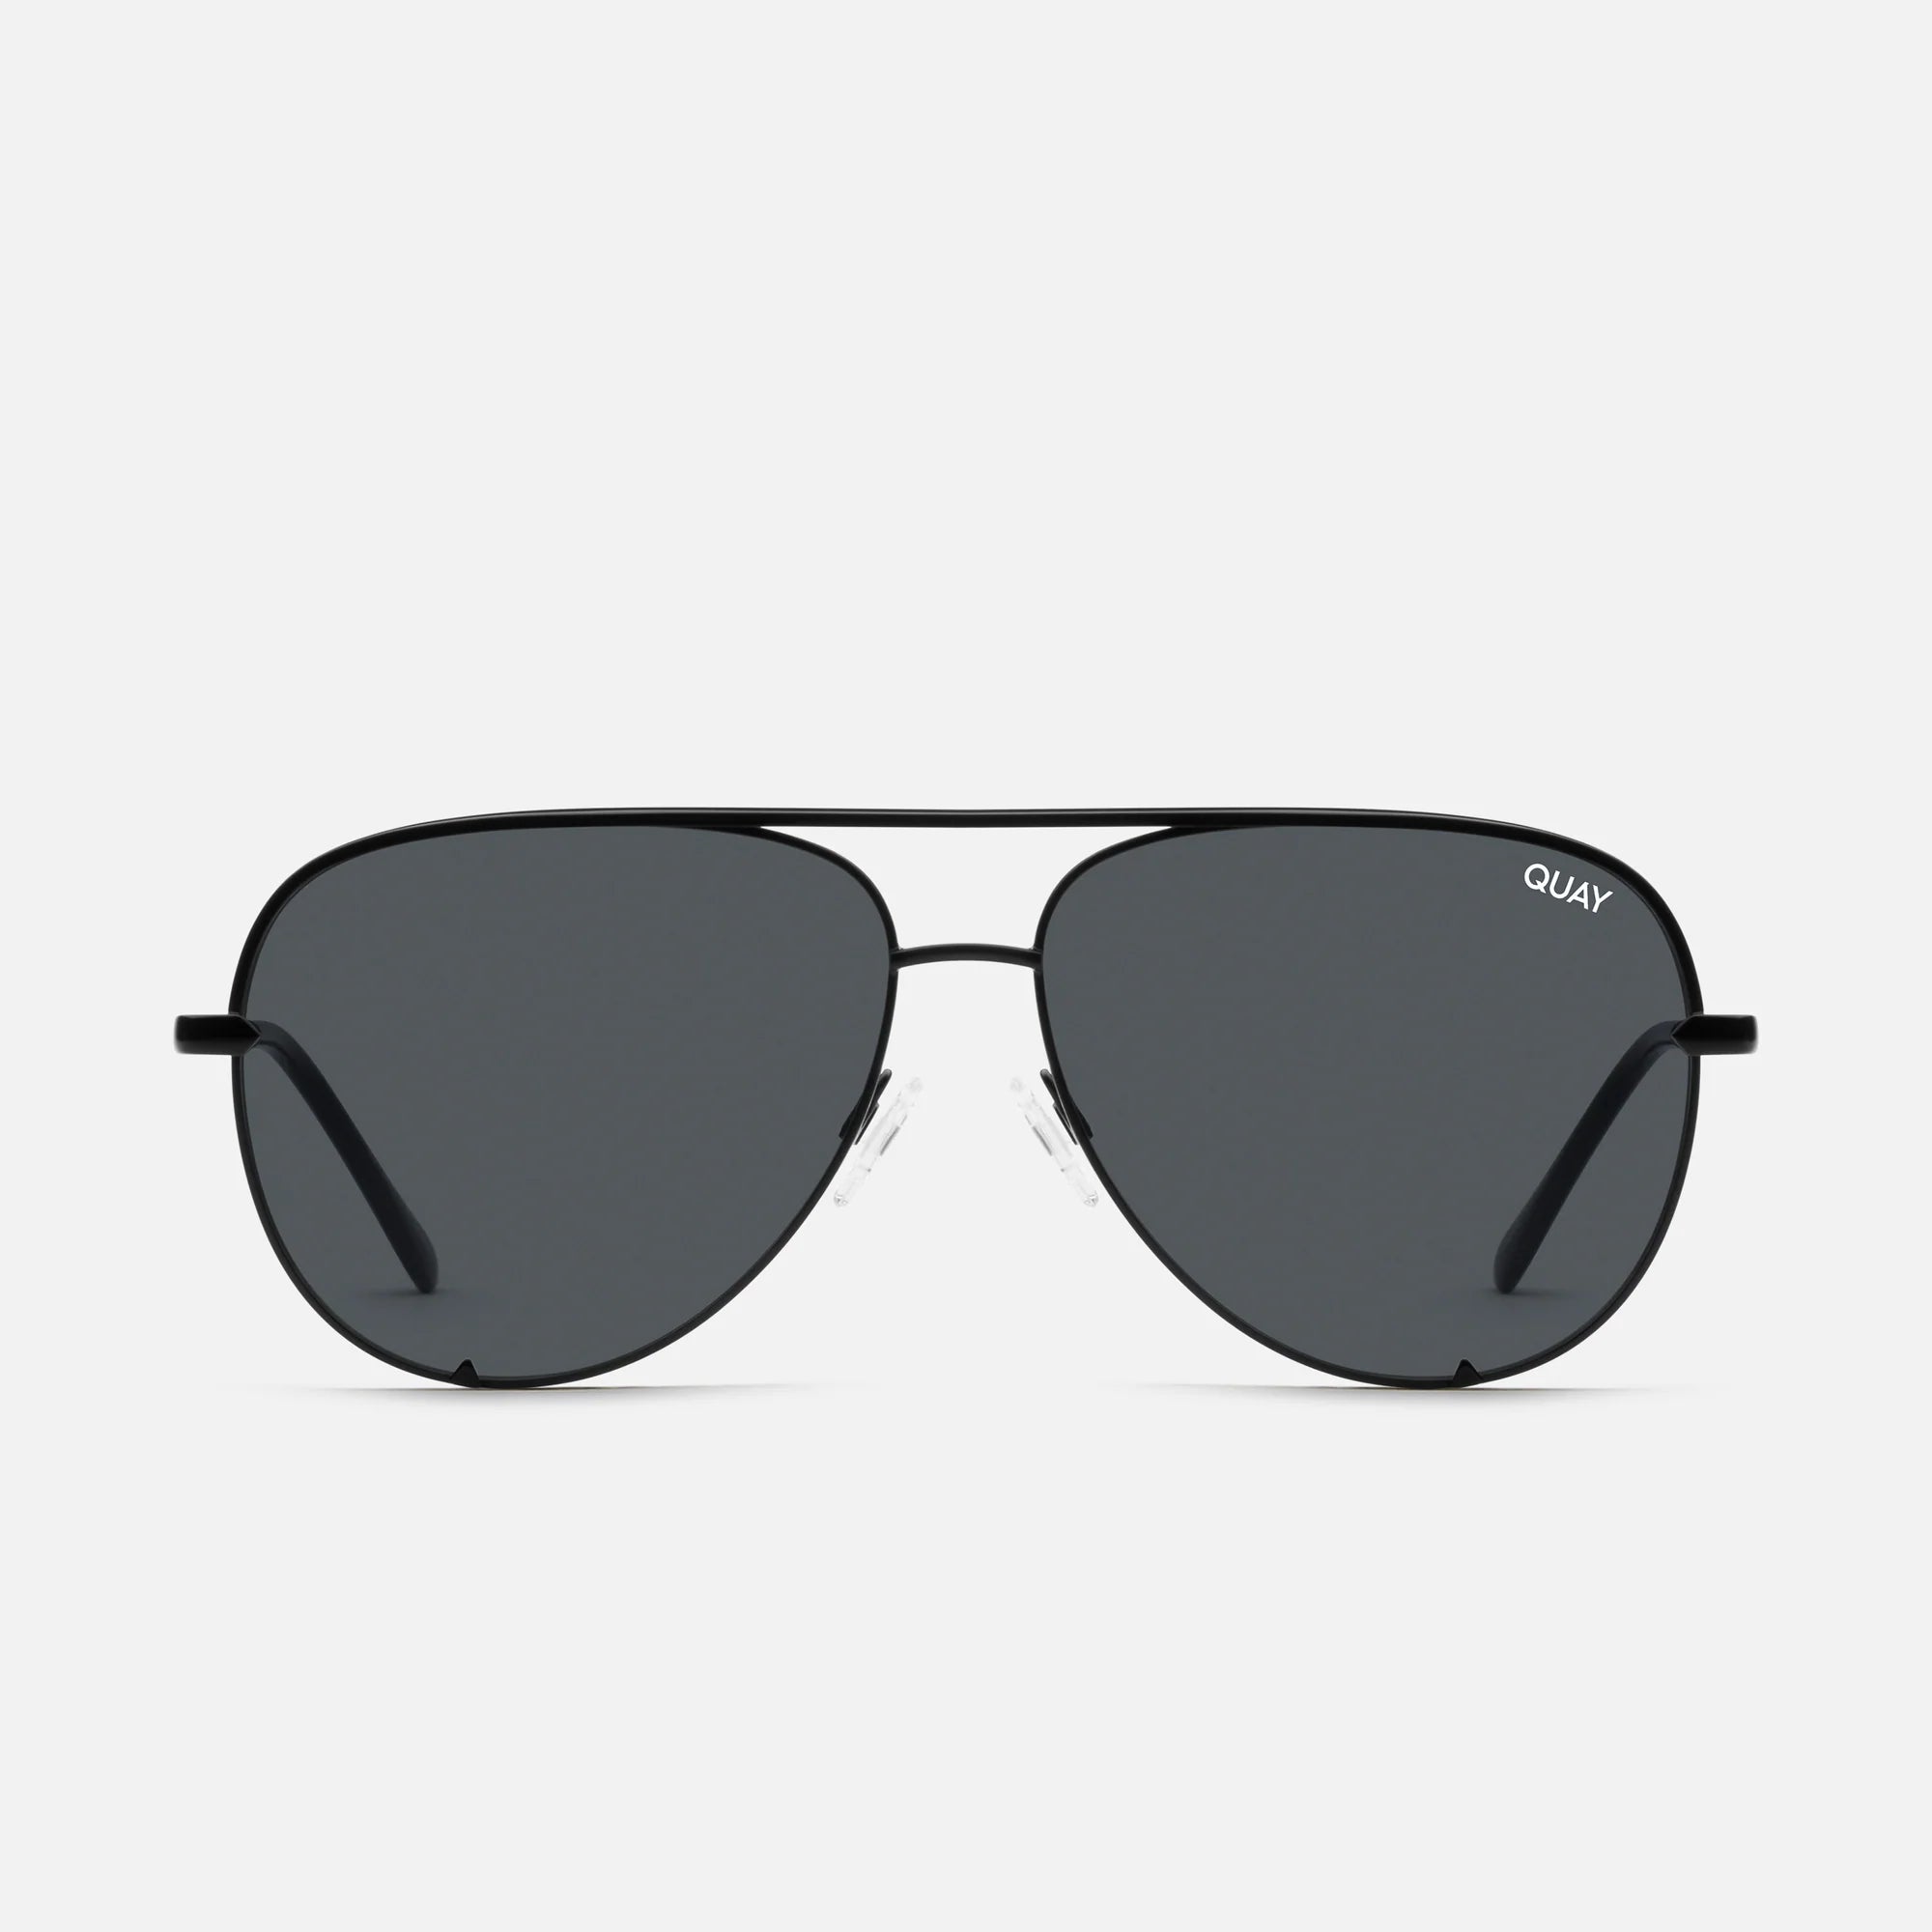 Quay High Key X-Large Sunglasses